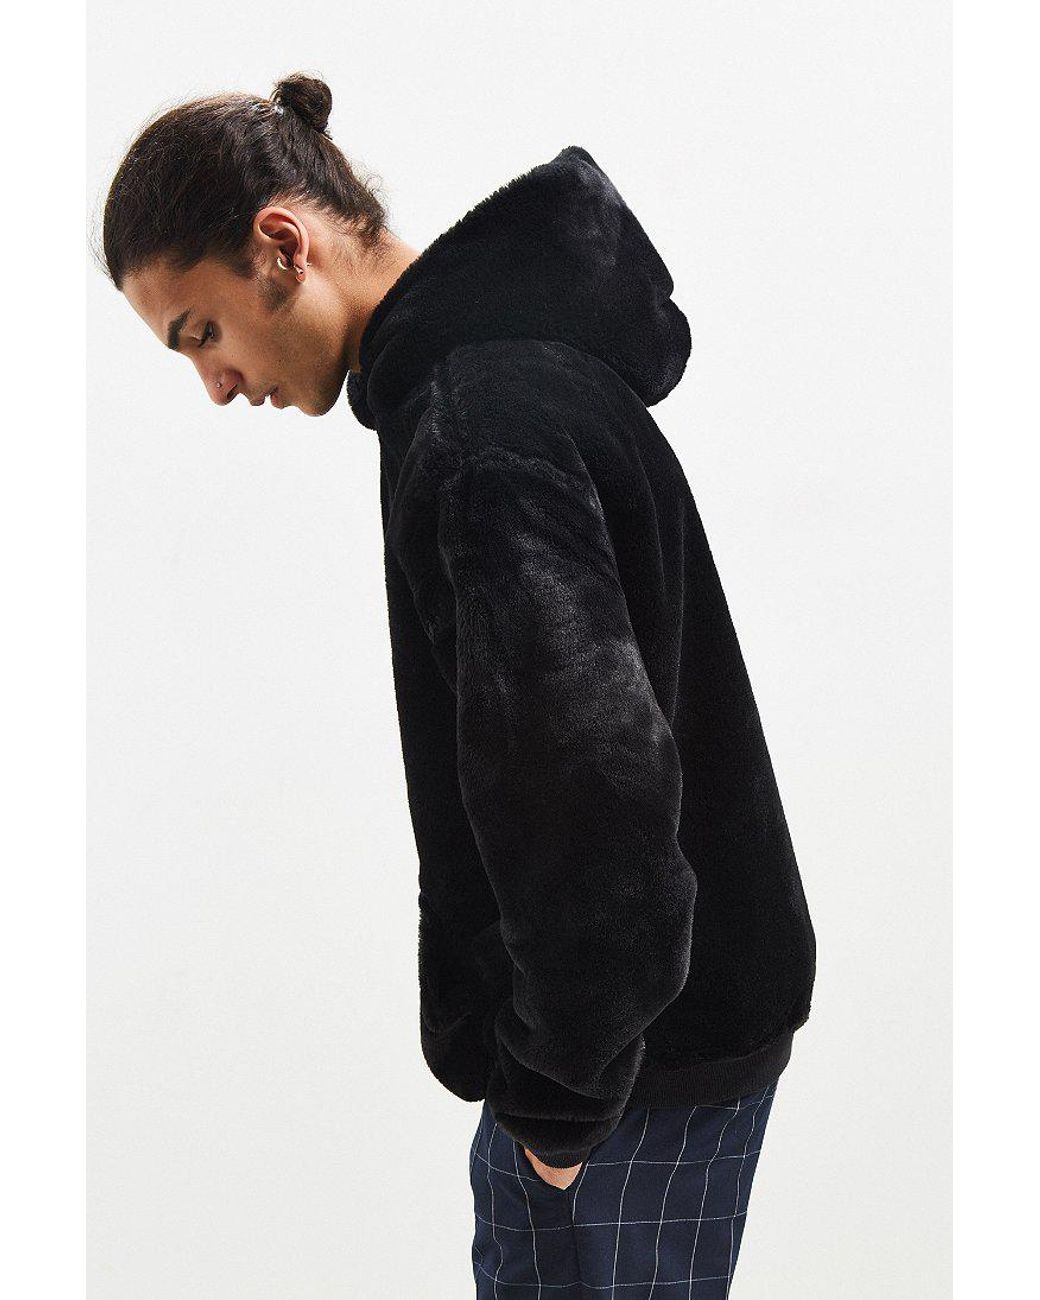 Urban Outfitters Uo Faux Fur Hoodie Sweatshirt in Black for Men